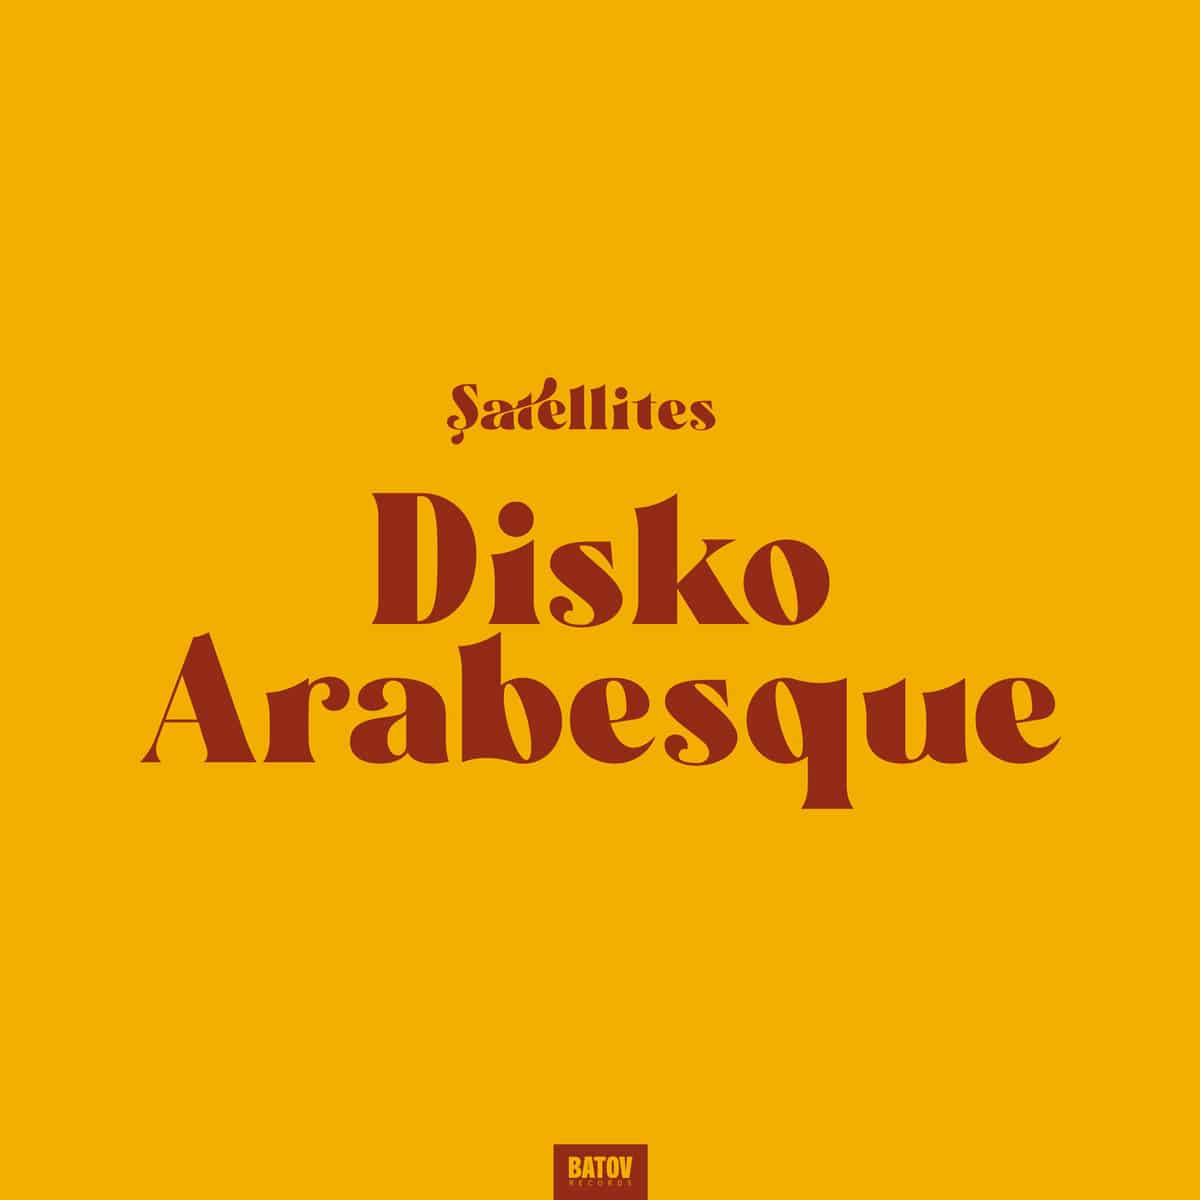 Satellites Disko Arabesque Digital Cover